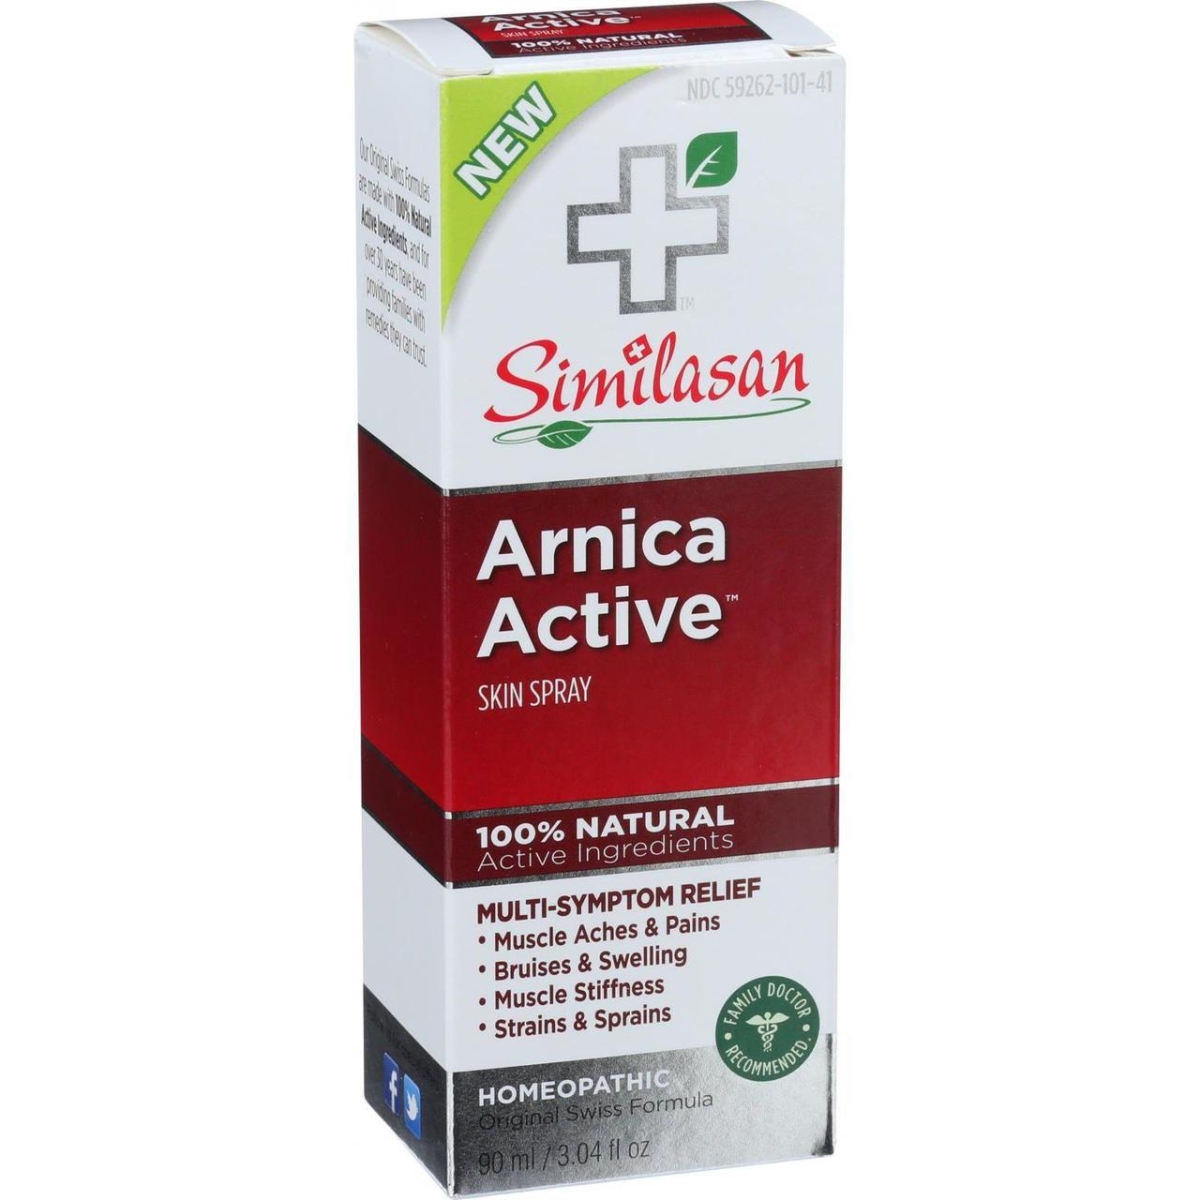 Hg1536671 3.04 Oz Arnica Active Skin Spray